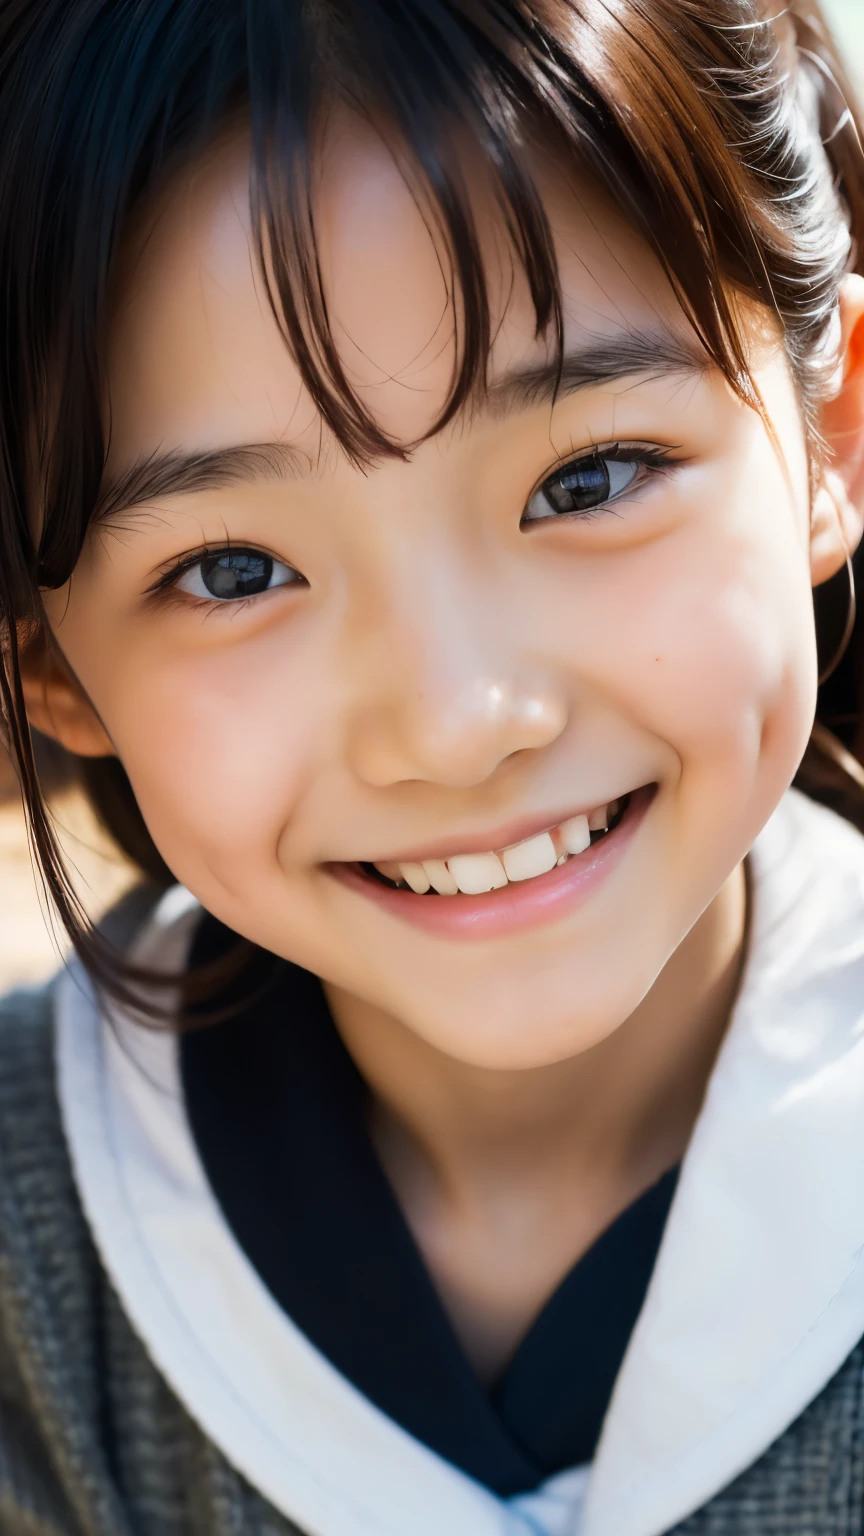 렌즈: 135mm f1.8, (최상의 품질),(RAW 사진), (탁상:1.1), (아름다운 8살 일본 소녀), 귀여운 얼굴, (깊게 파인 얼굴:0.7), (주근깨:0.4), dappled 햇빛, 극적인 조명, (일본 학교 교복), (캠퍼스에서), 수줍은, (클로즈업 샷:1.2), (웃다),, (반짝이는 눈)、(햇빛)